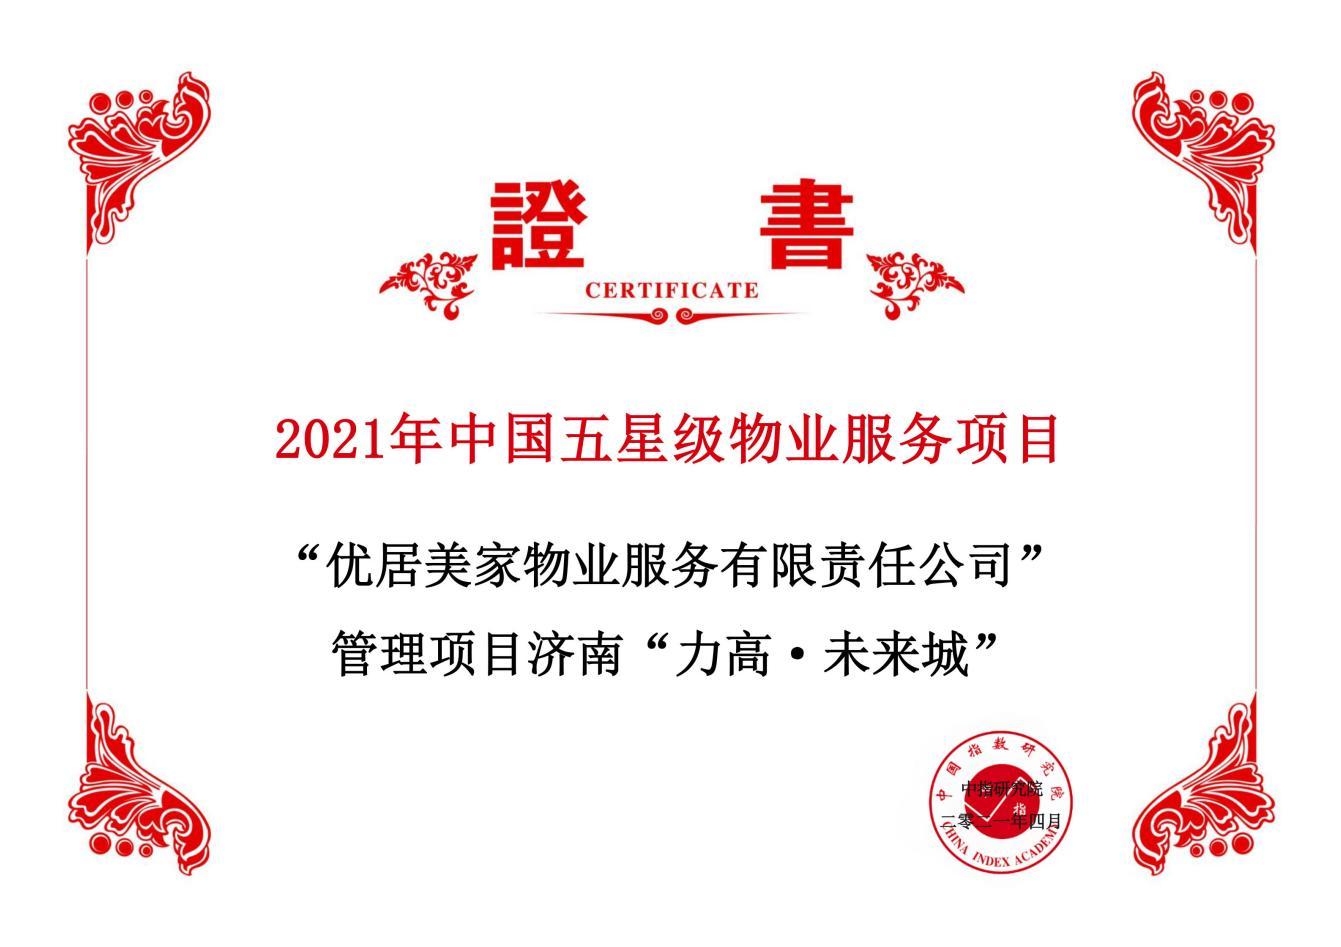 力高集团(1622.HK)旗下物业荣膺中国物业服务百强